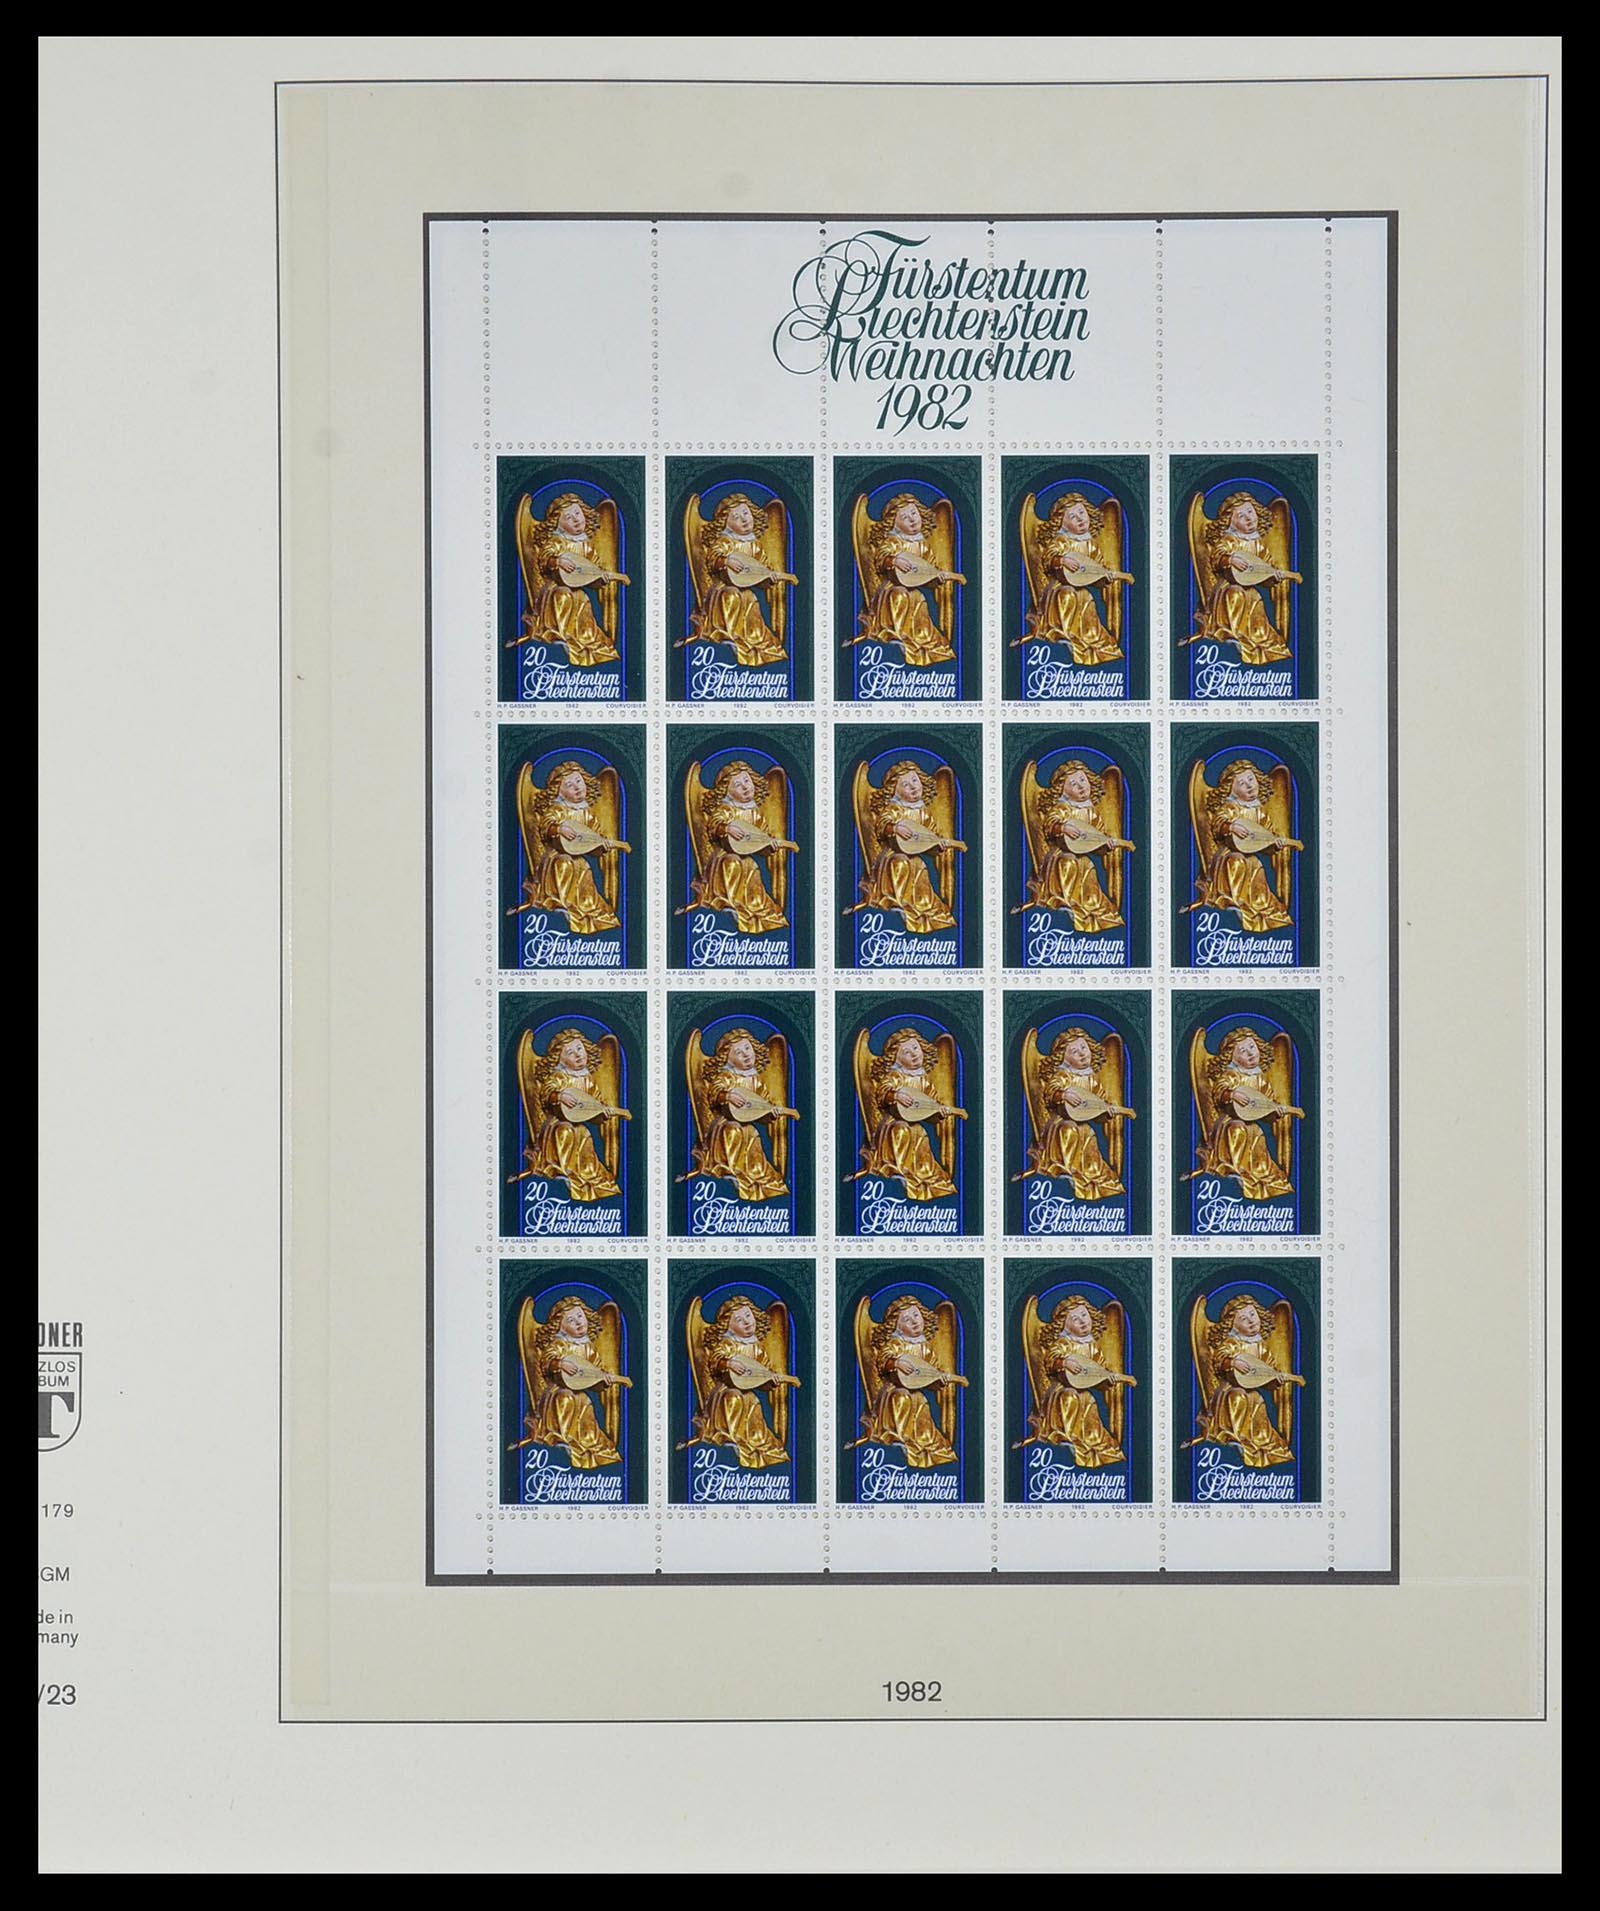 34187 023 - Stamp collection 34187 Liechtenstein kleinbogen 1982-1995.